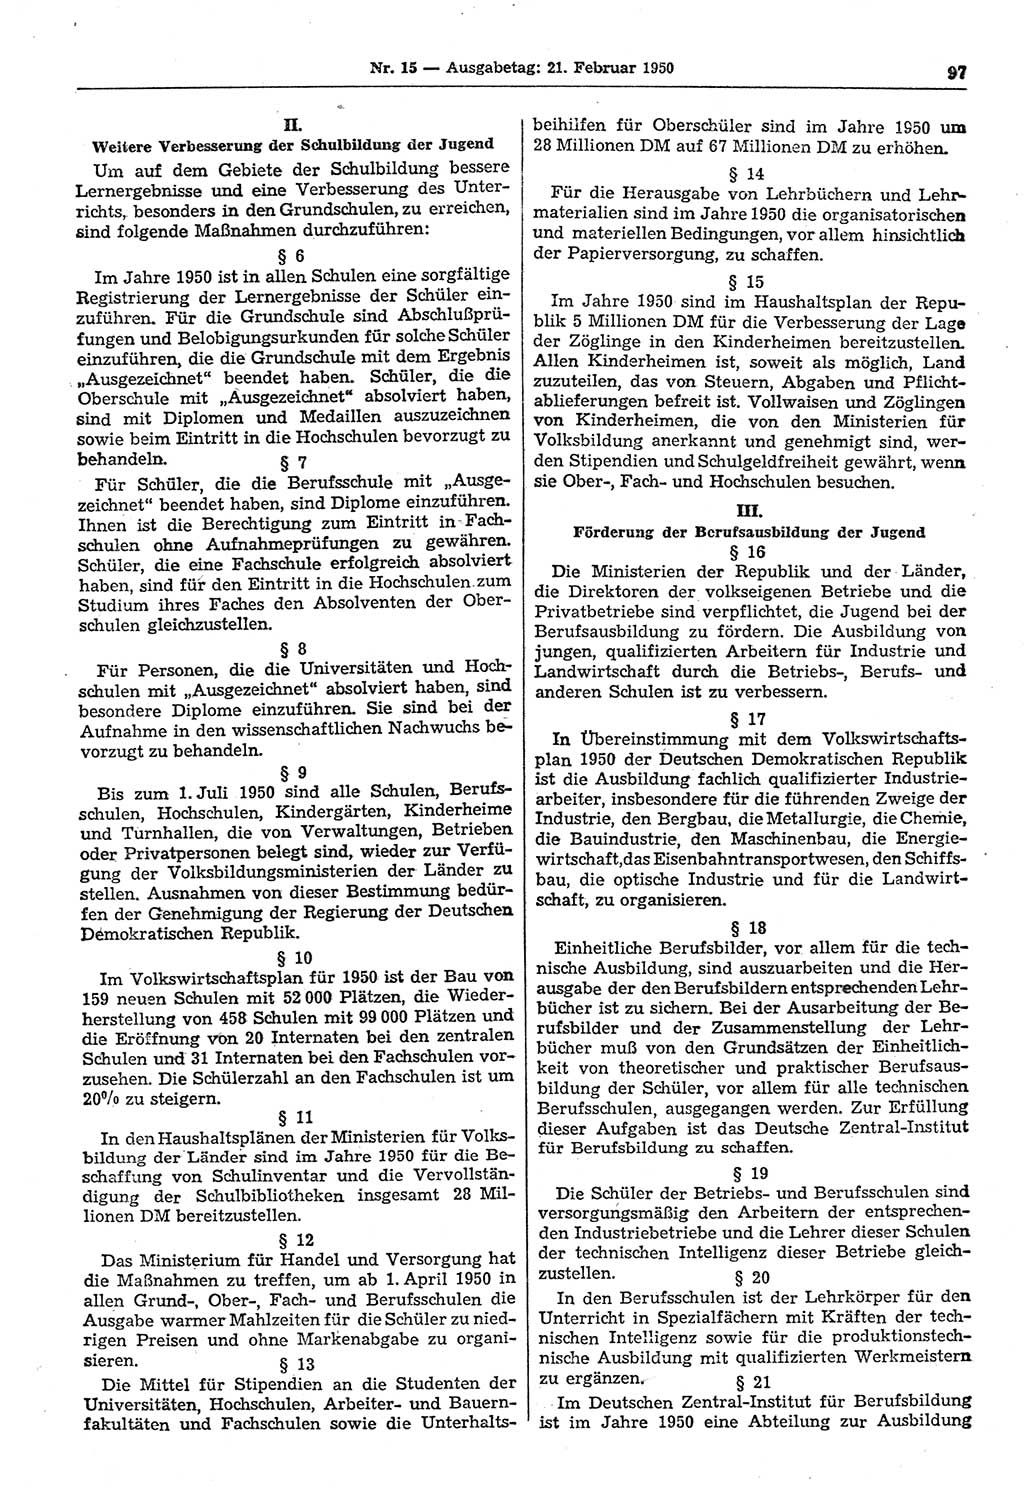 Gesetzblatt (GBl.) der Deutschen Demokratischen Republik (DDR) 1950, Seite 97 (GBl. DDR 1950, S. 97)